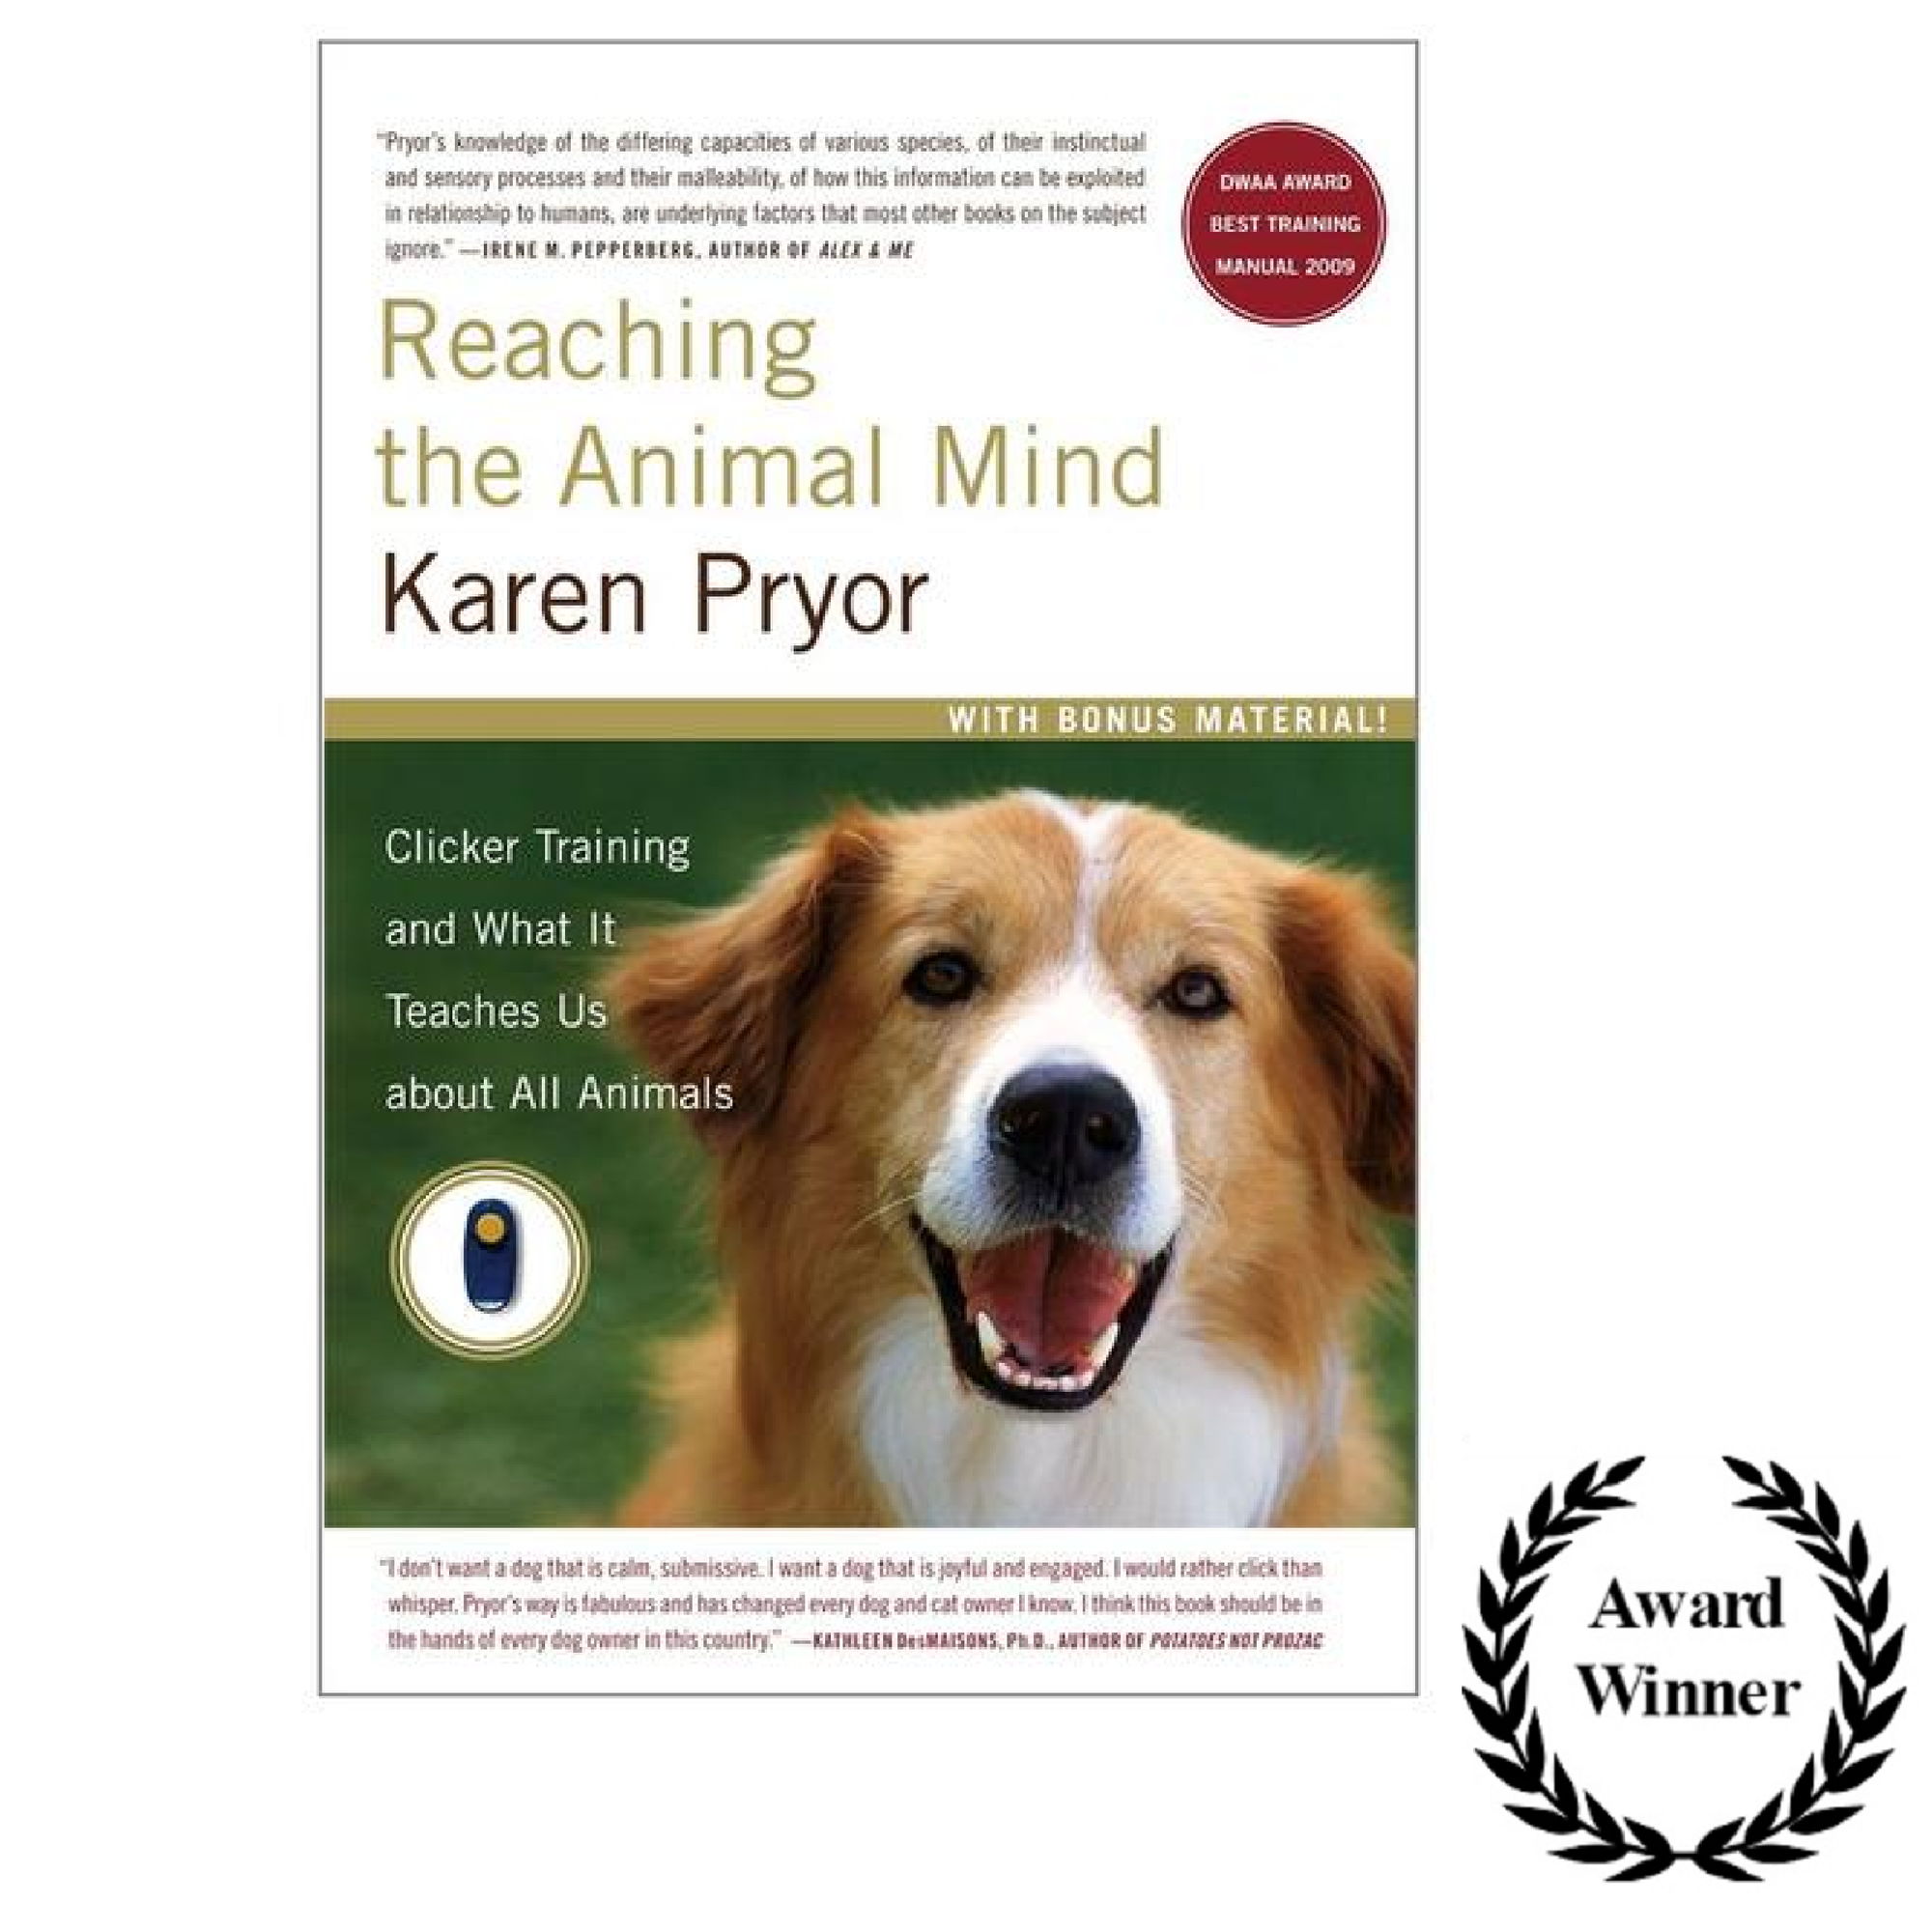 Reaching the Animal Mind by Karen Pryor